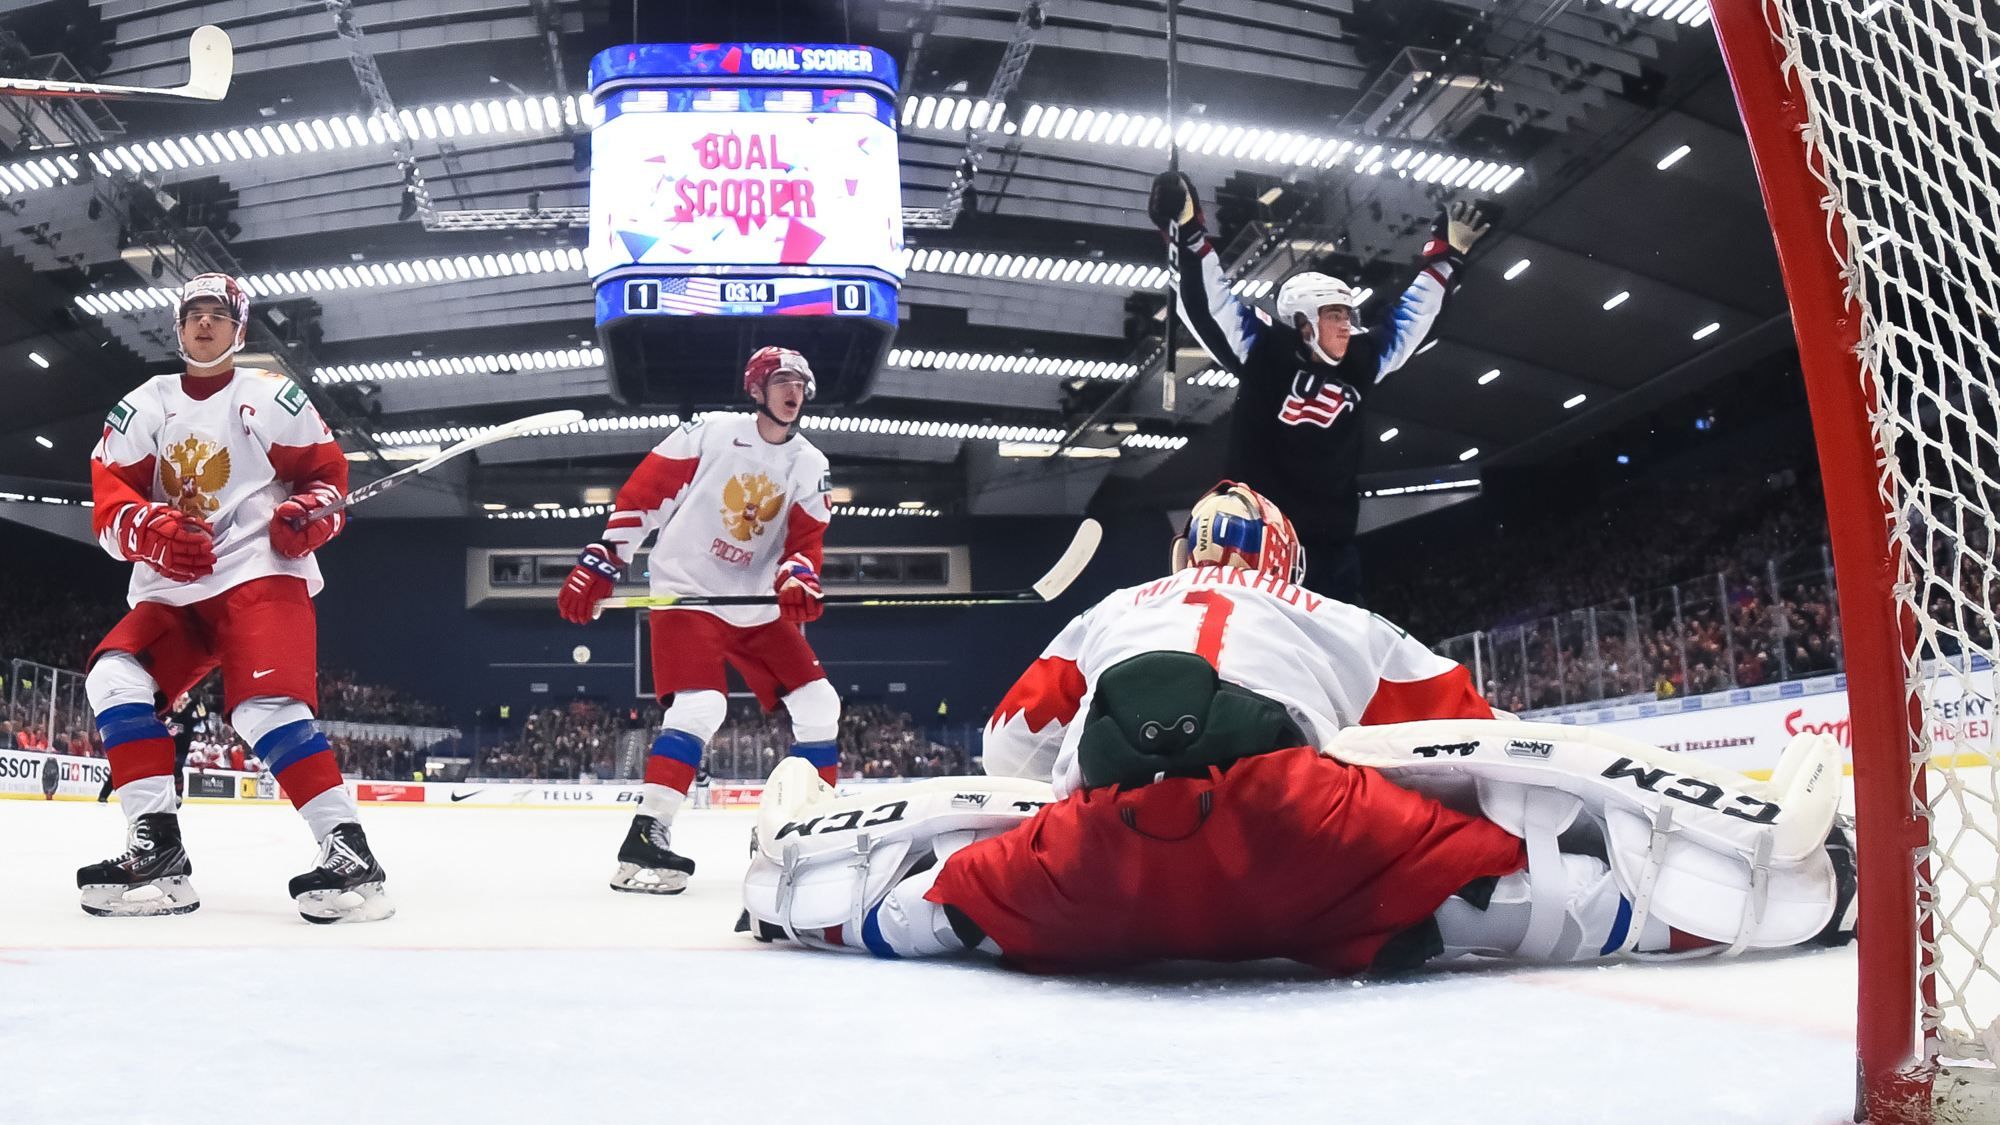 Россия проиграла США на чемпионате мира по хоккею, пропустив две шайбы за 6 секунд: видео